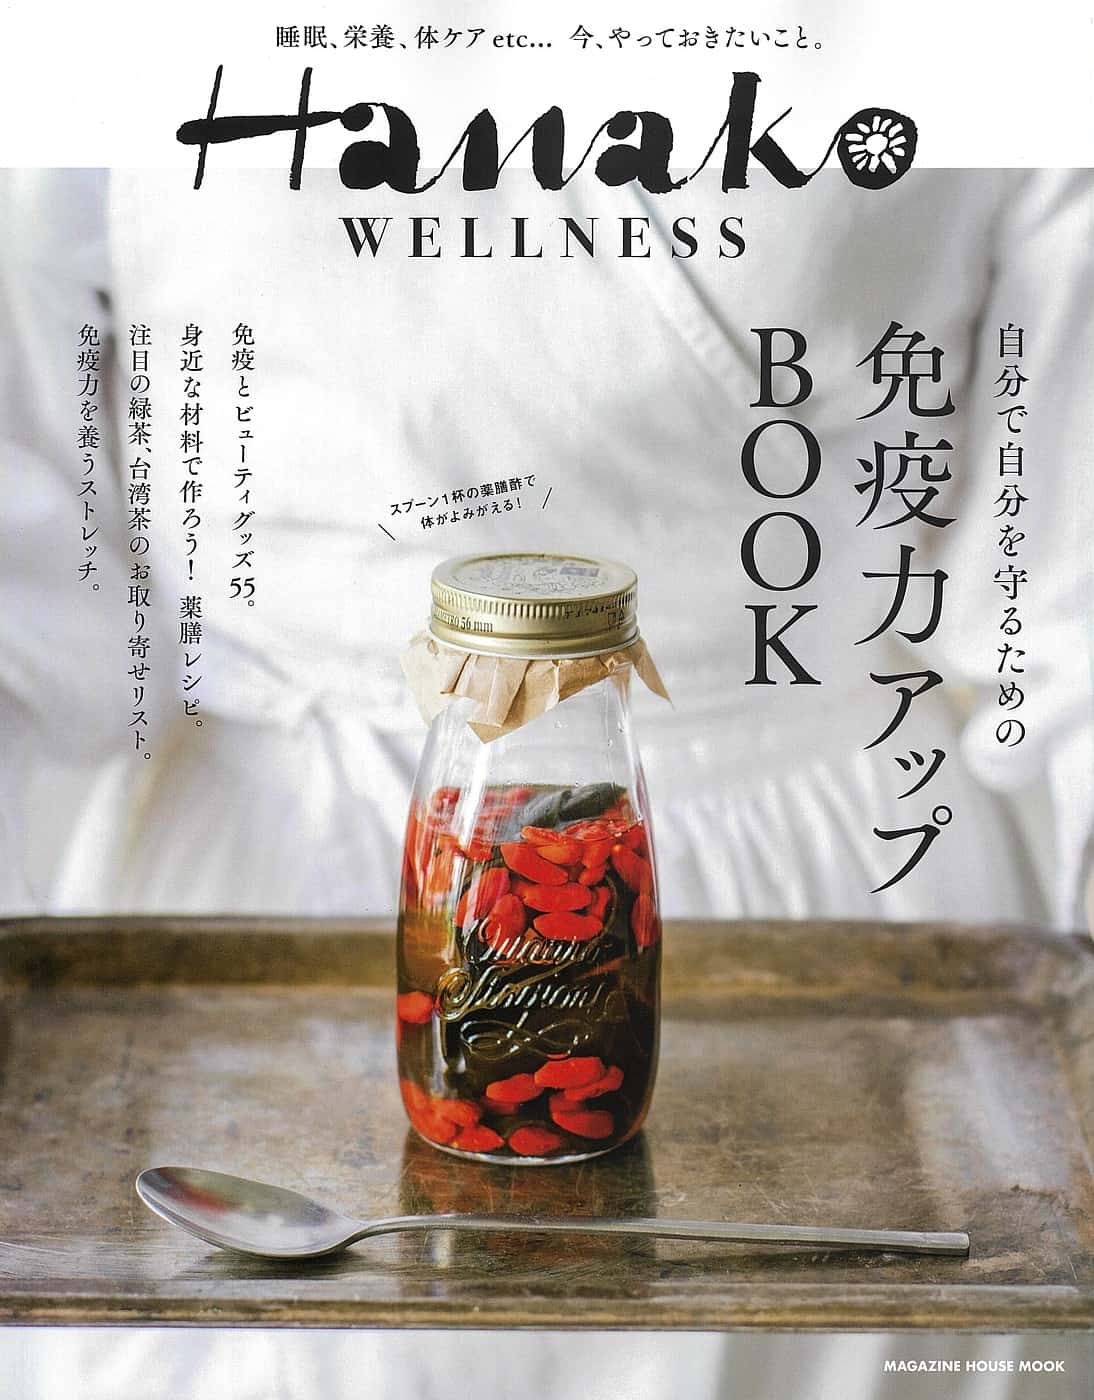 11月10日発売『Hanako WELLNESS』